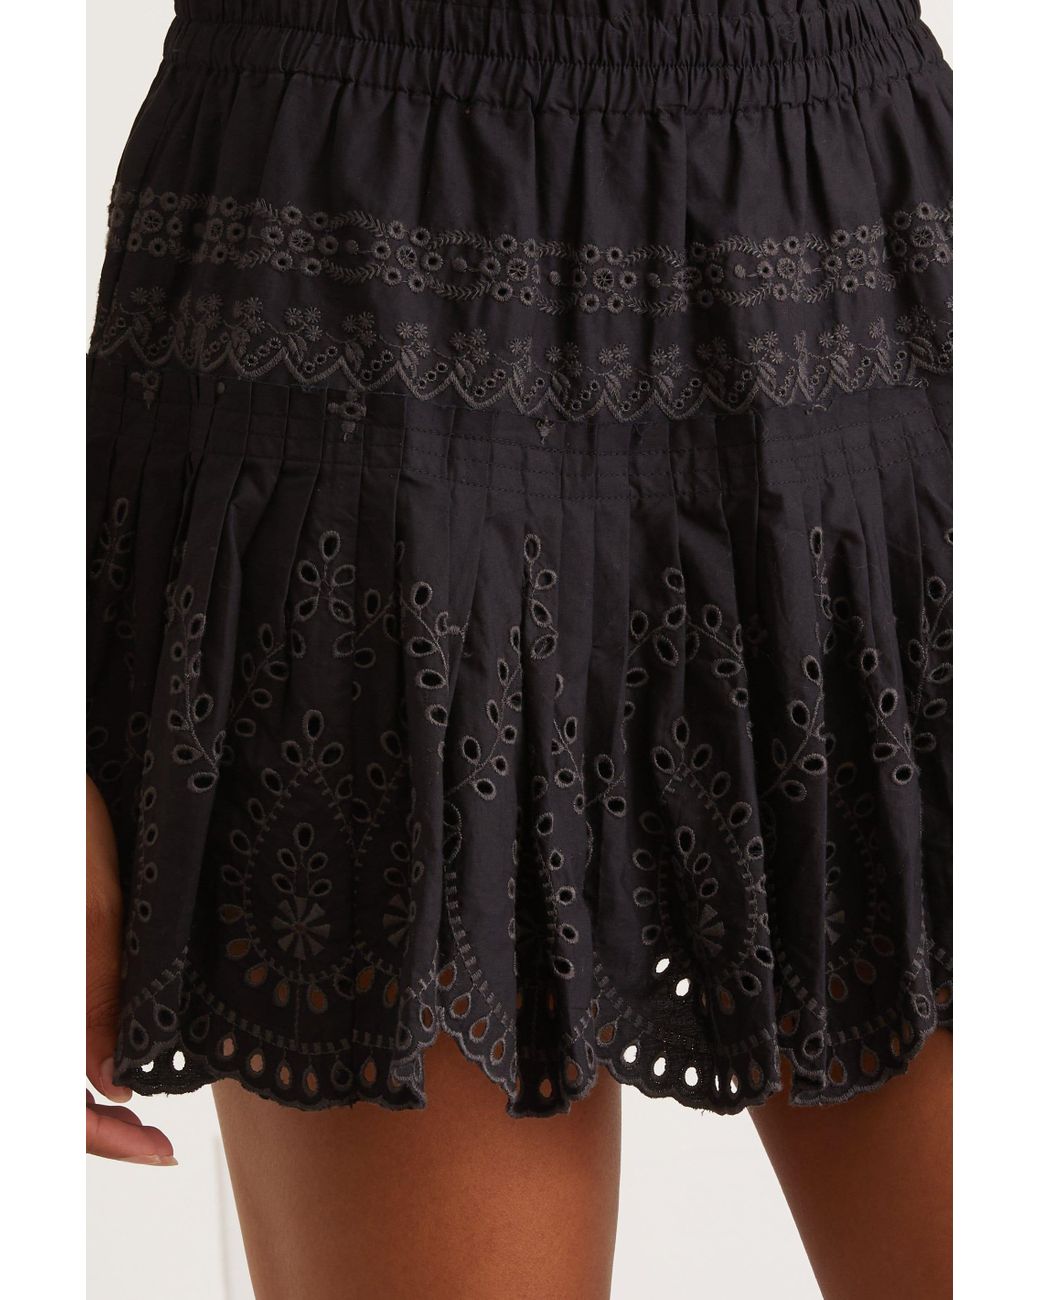 LoveShackFancy Sarie Skirt in Black | Lyst UK